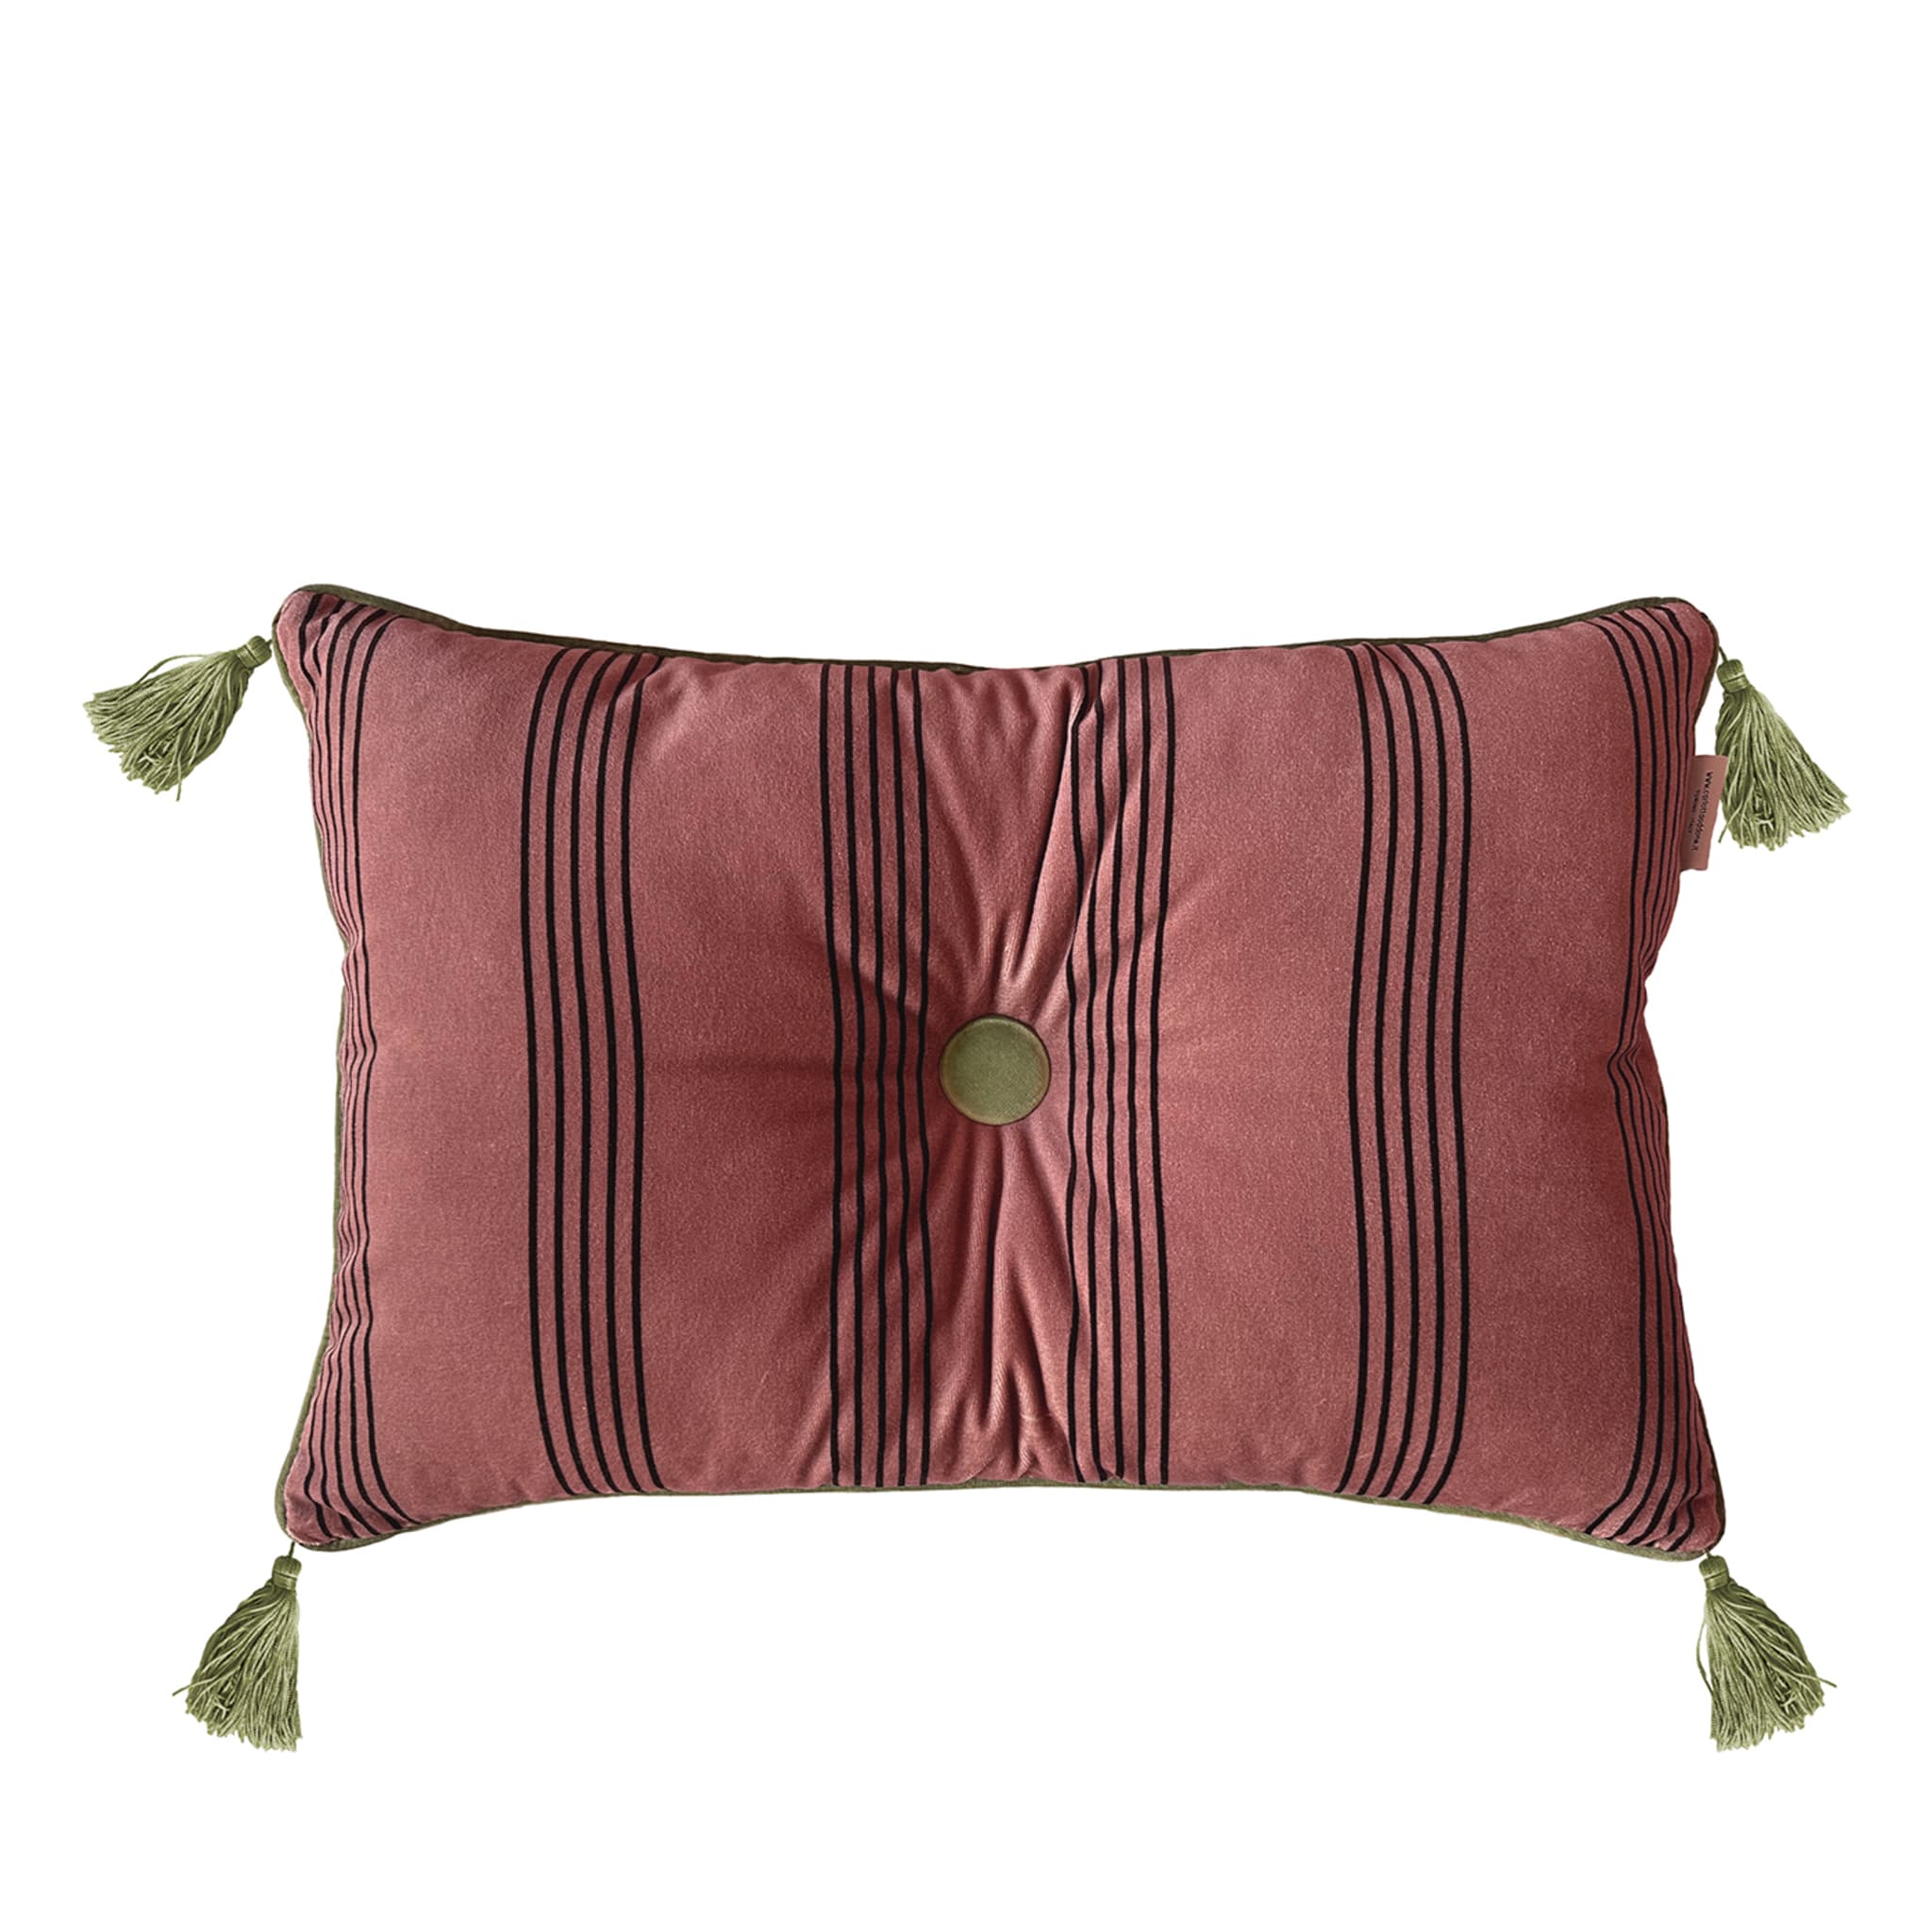 Cuscino Sweet Pillow rettangolare a righe rosa antico Carlotta